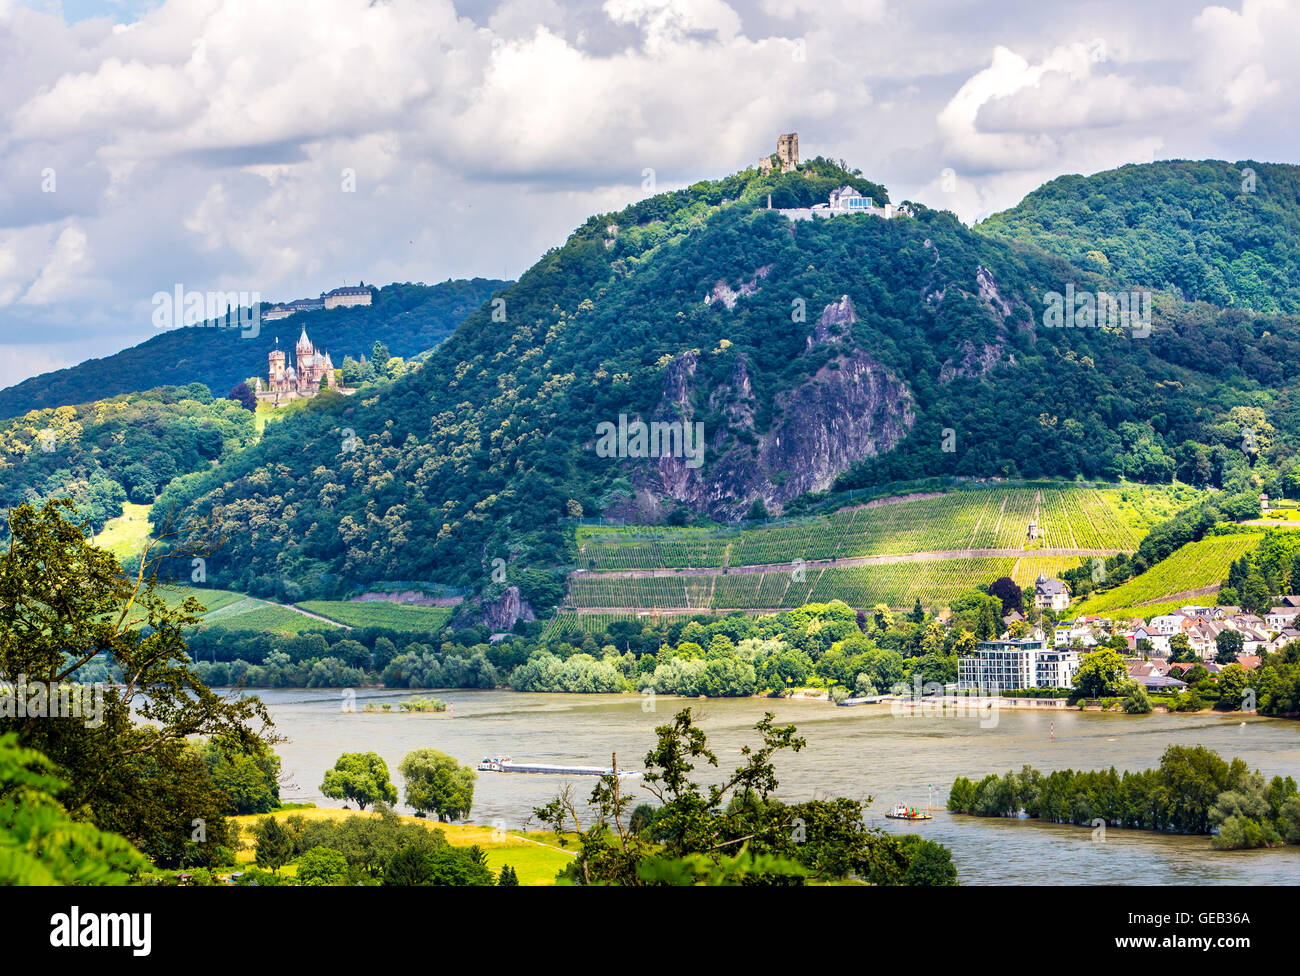 Drachenfels Berg, Ruine Burg und Schloss Drachenburg, Siebengebirge, 7- Gebirge, Rheintal, Deutschland Stockfotografie - Alamy